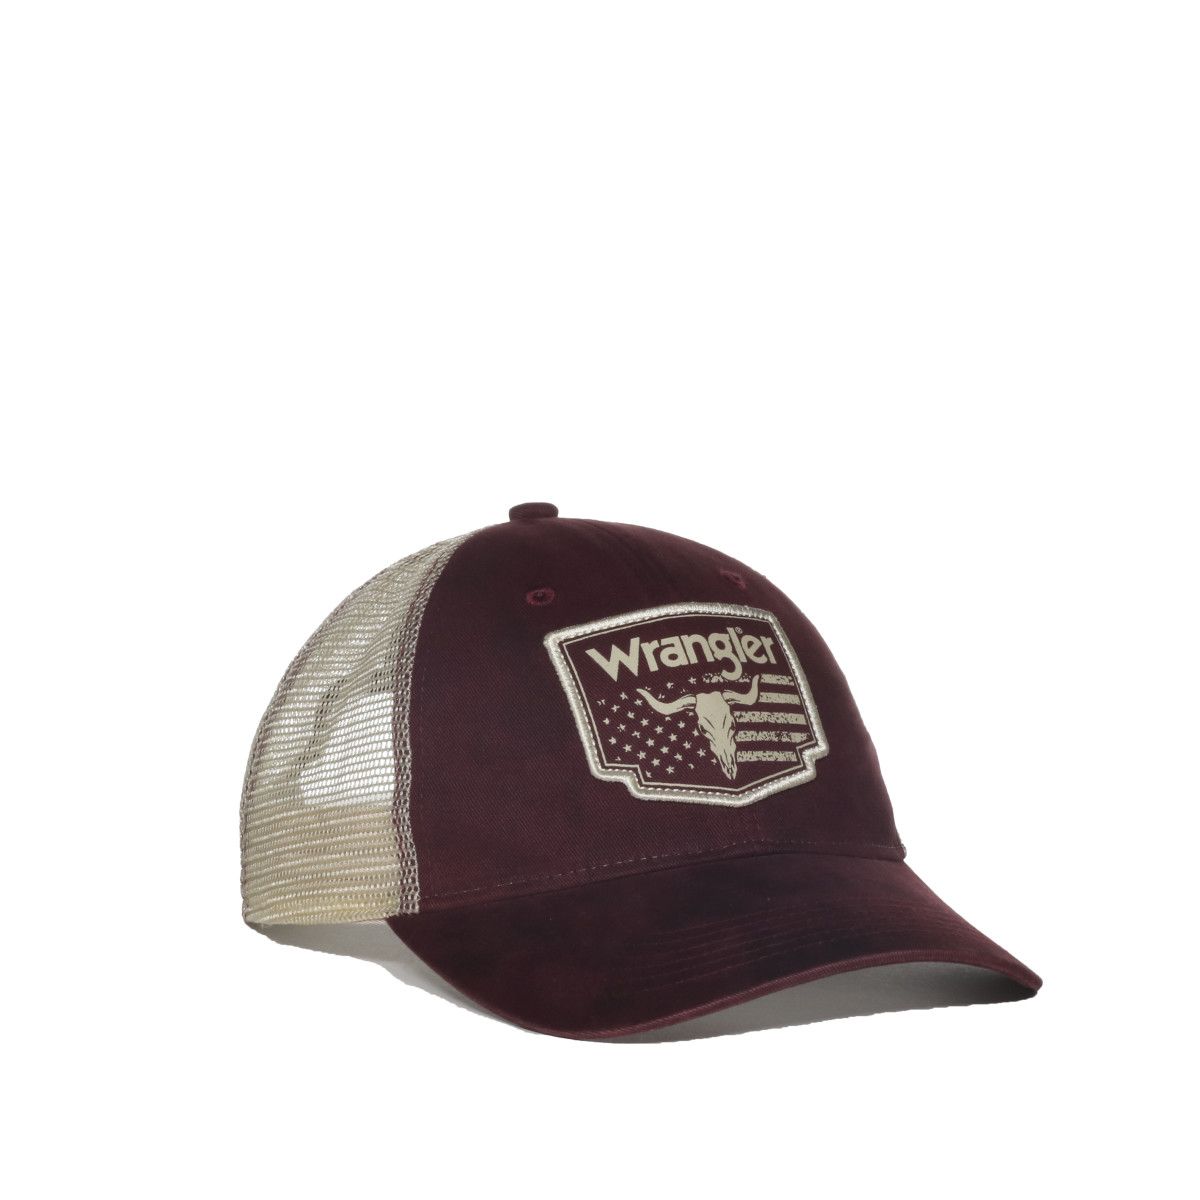 Gorra OUTDOOR CAP Wrangler vinotinto – WRA-102 – GOTAC